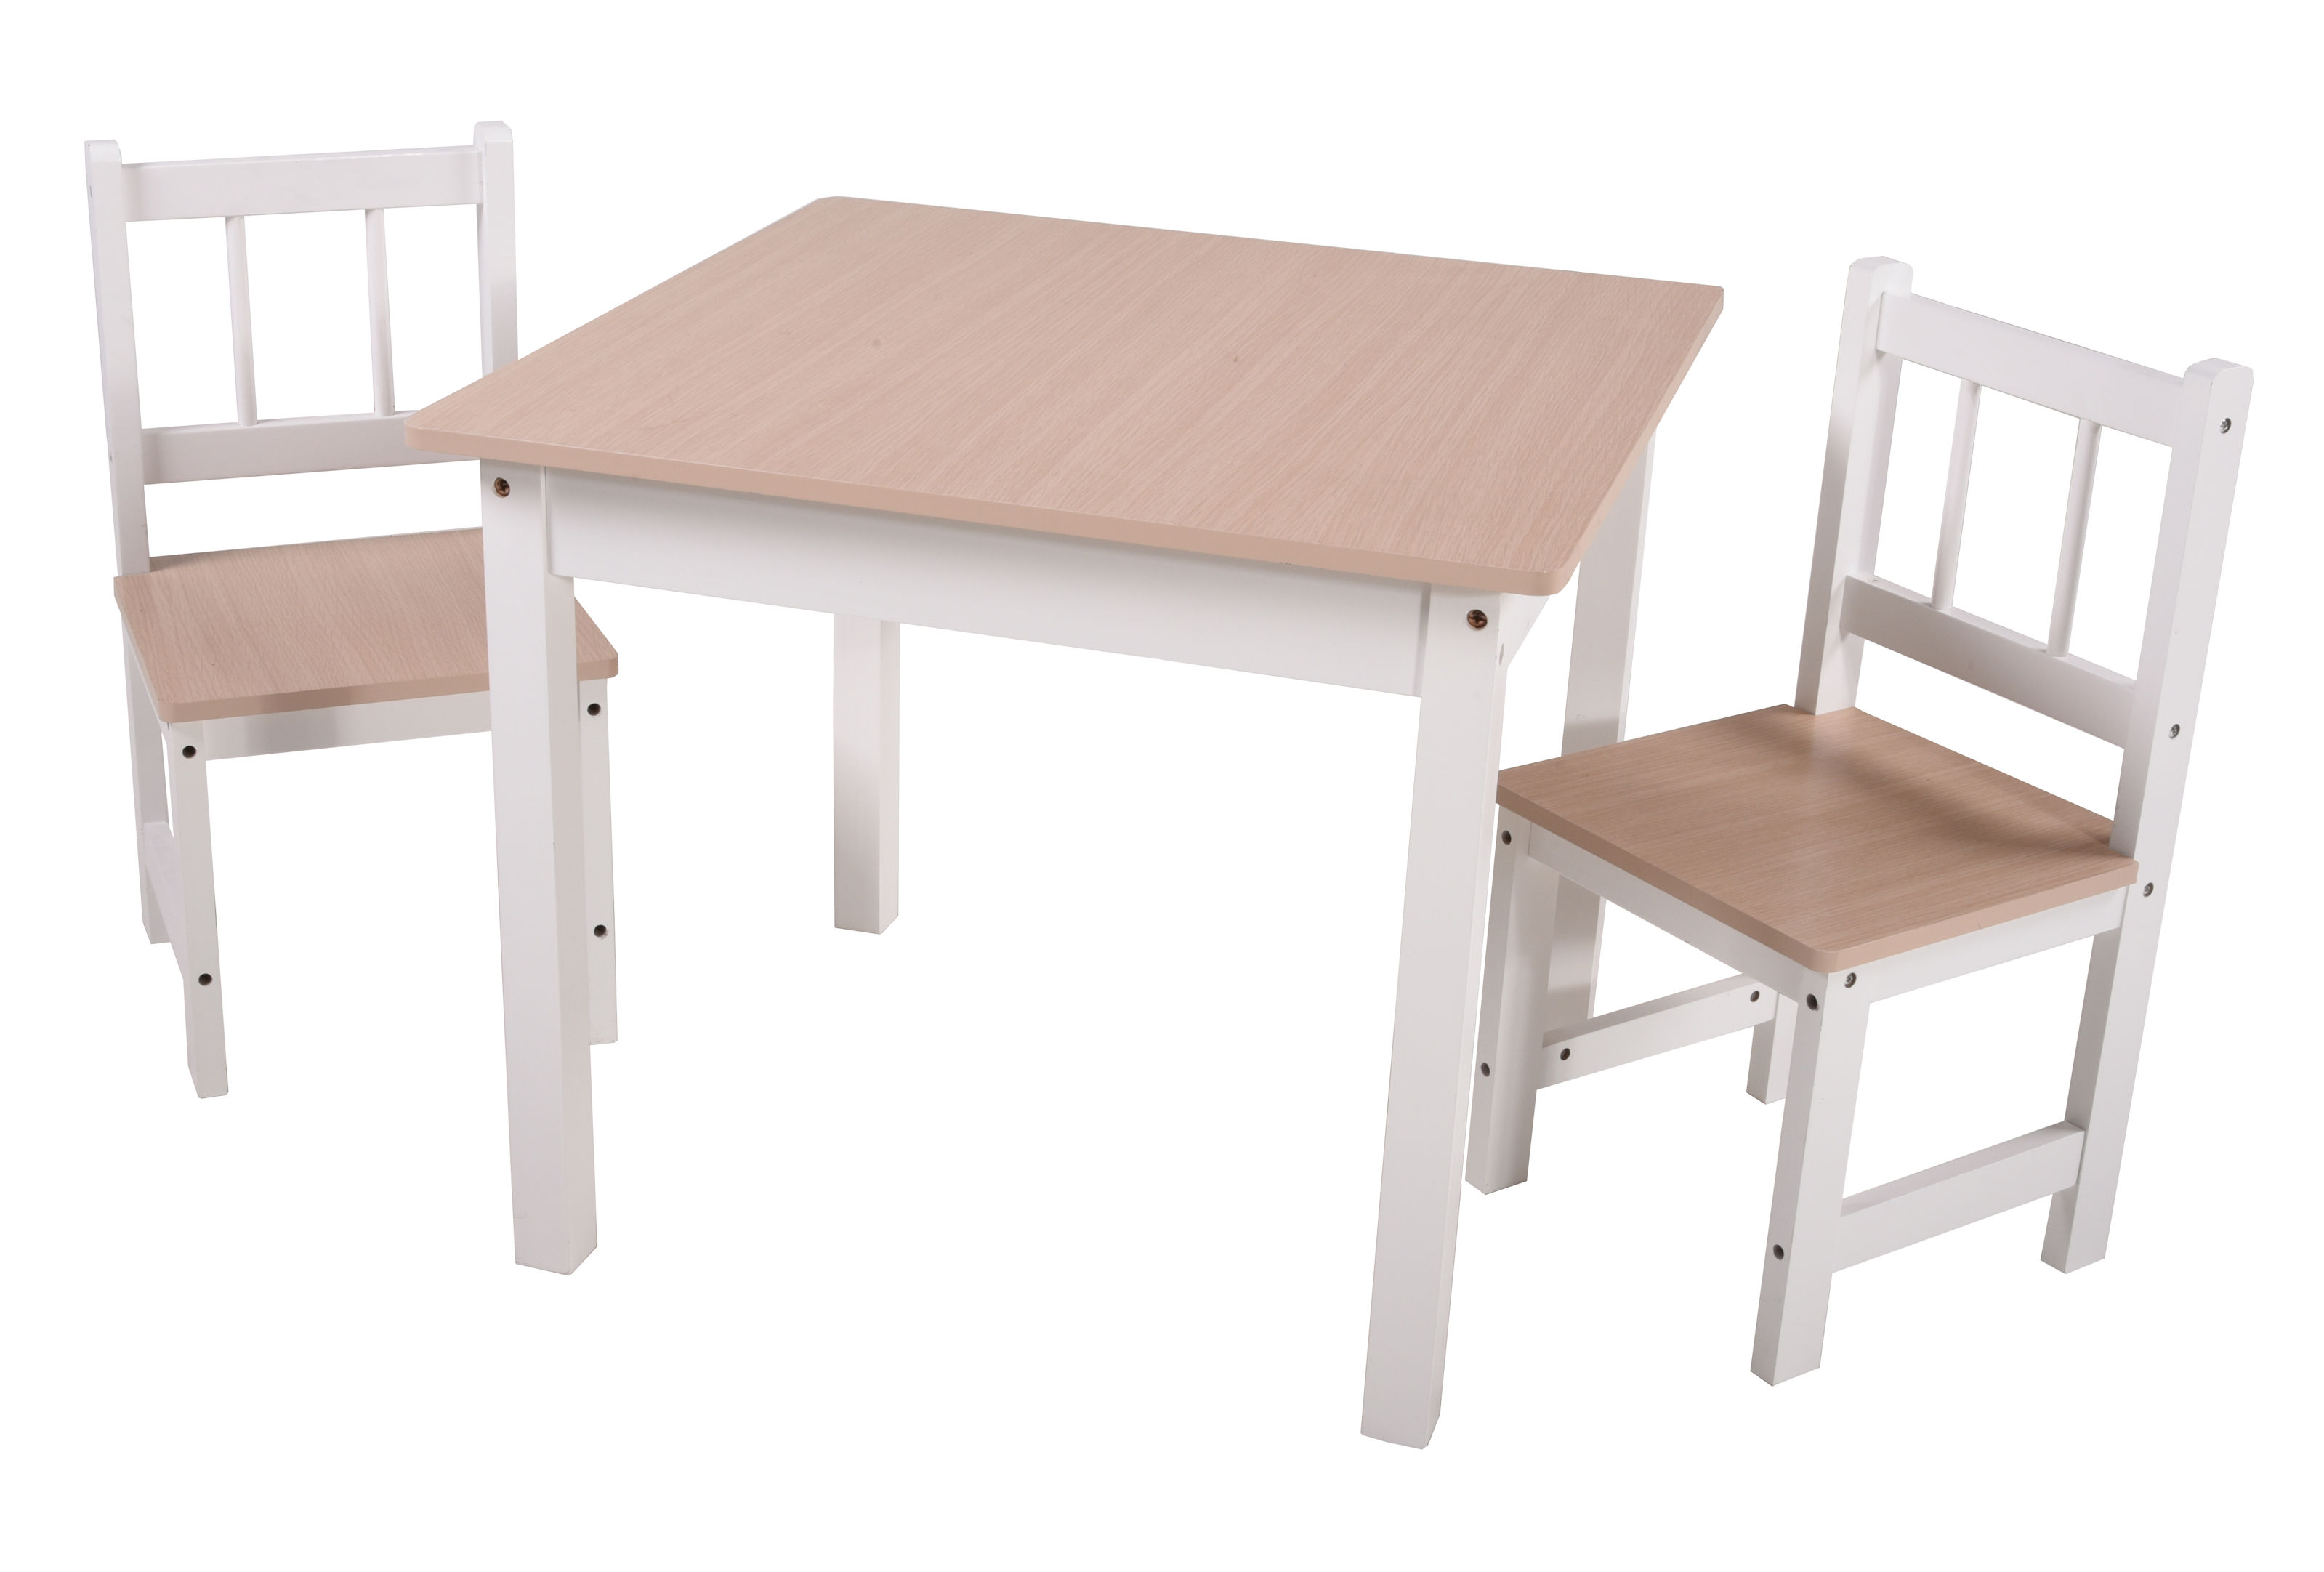 Kinder Sitzgruppe Kiefer massiv - 1 Tisch + 2 Stühle - Spielecke Jungen Mädchen Kinderzimmer Holz weiss